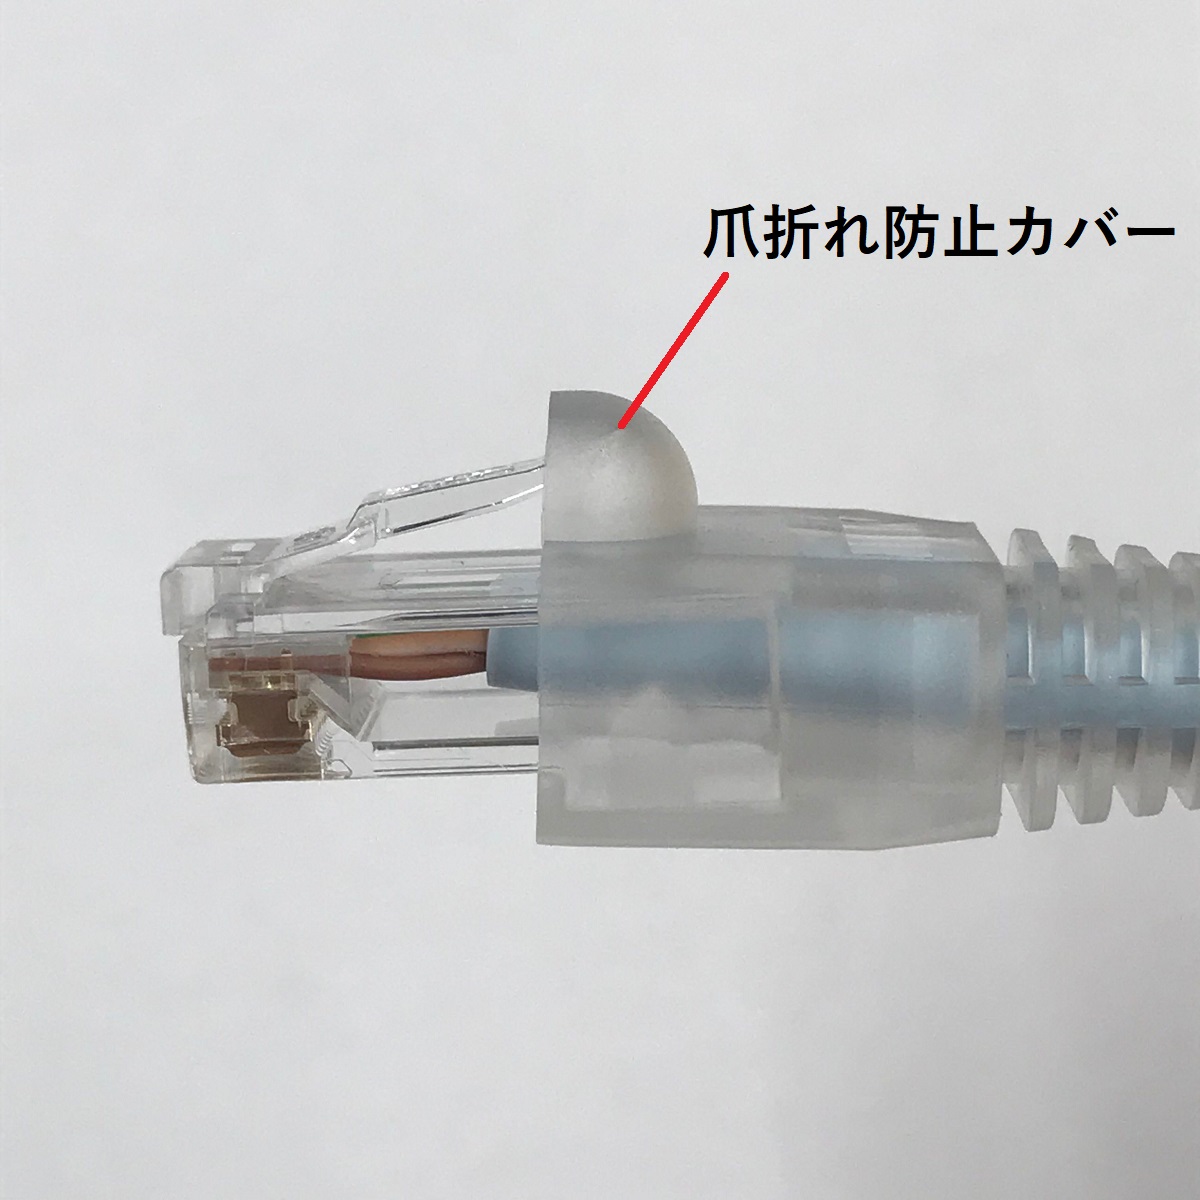 楽天市場】日本製LANケーブル NOEX つくば工場製造 O5e-UA17 17m 単線